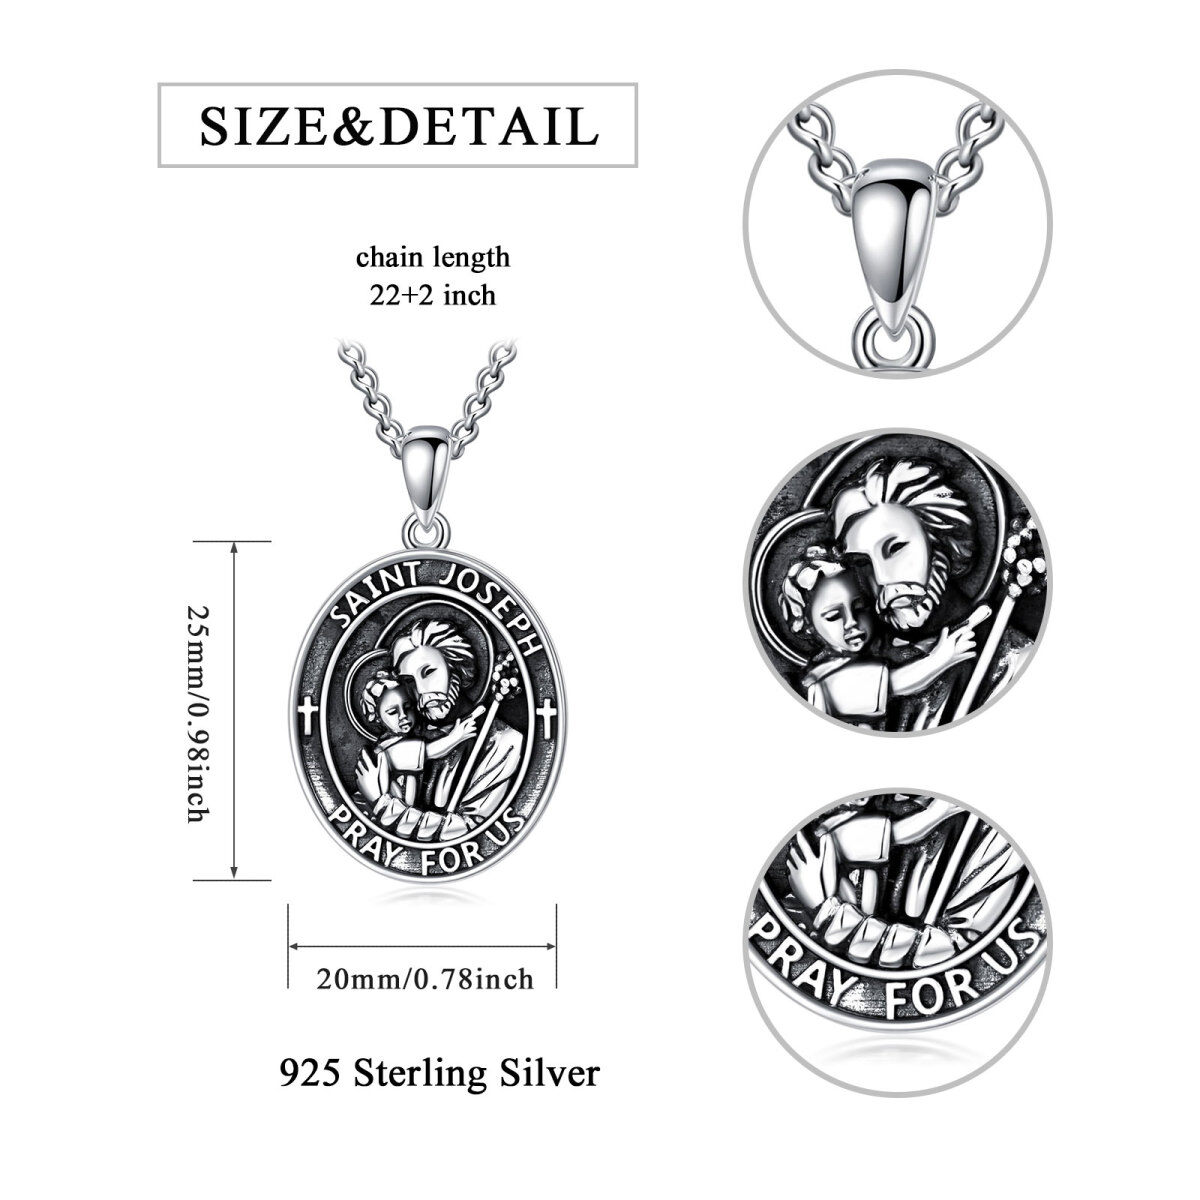 Sterling Silver Saint Joseph Pendant Necklace-6